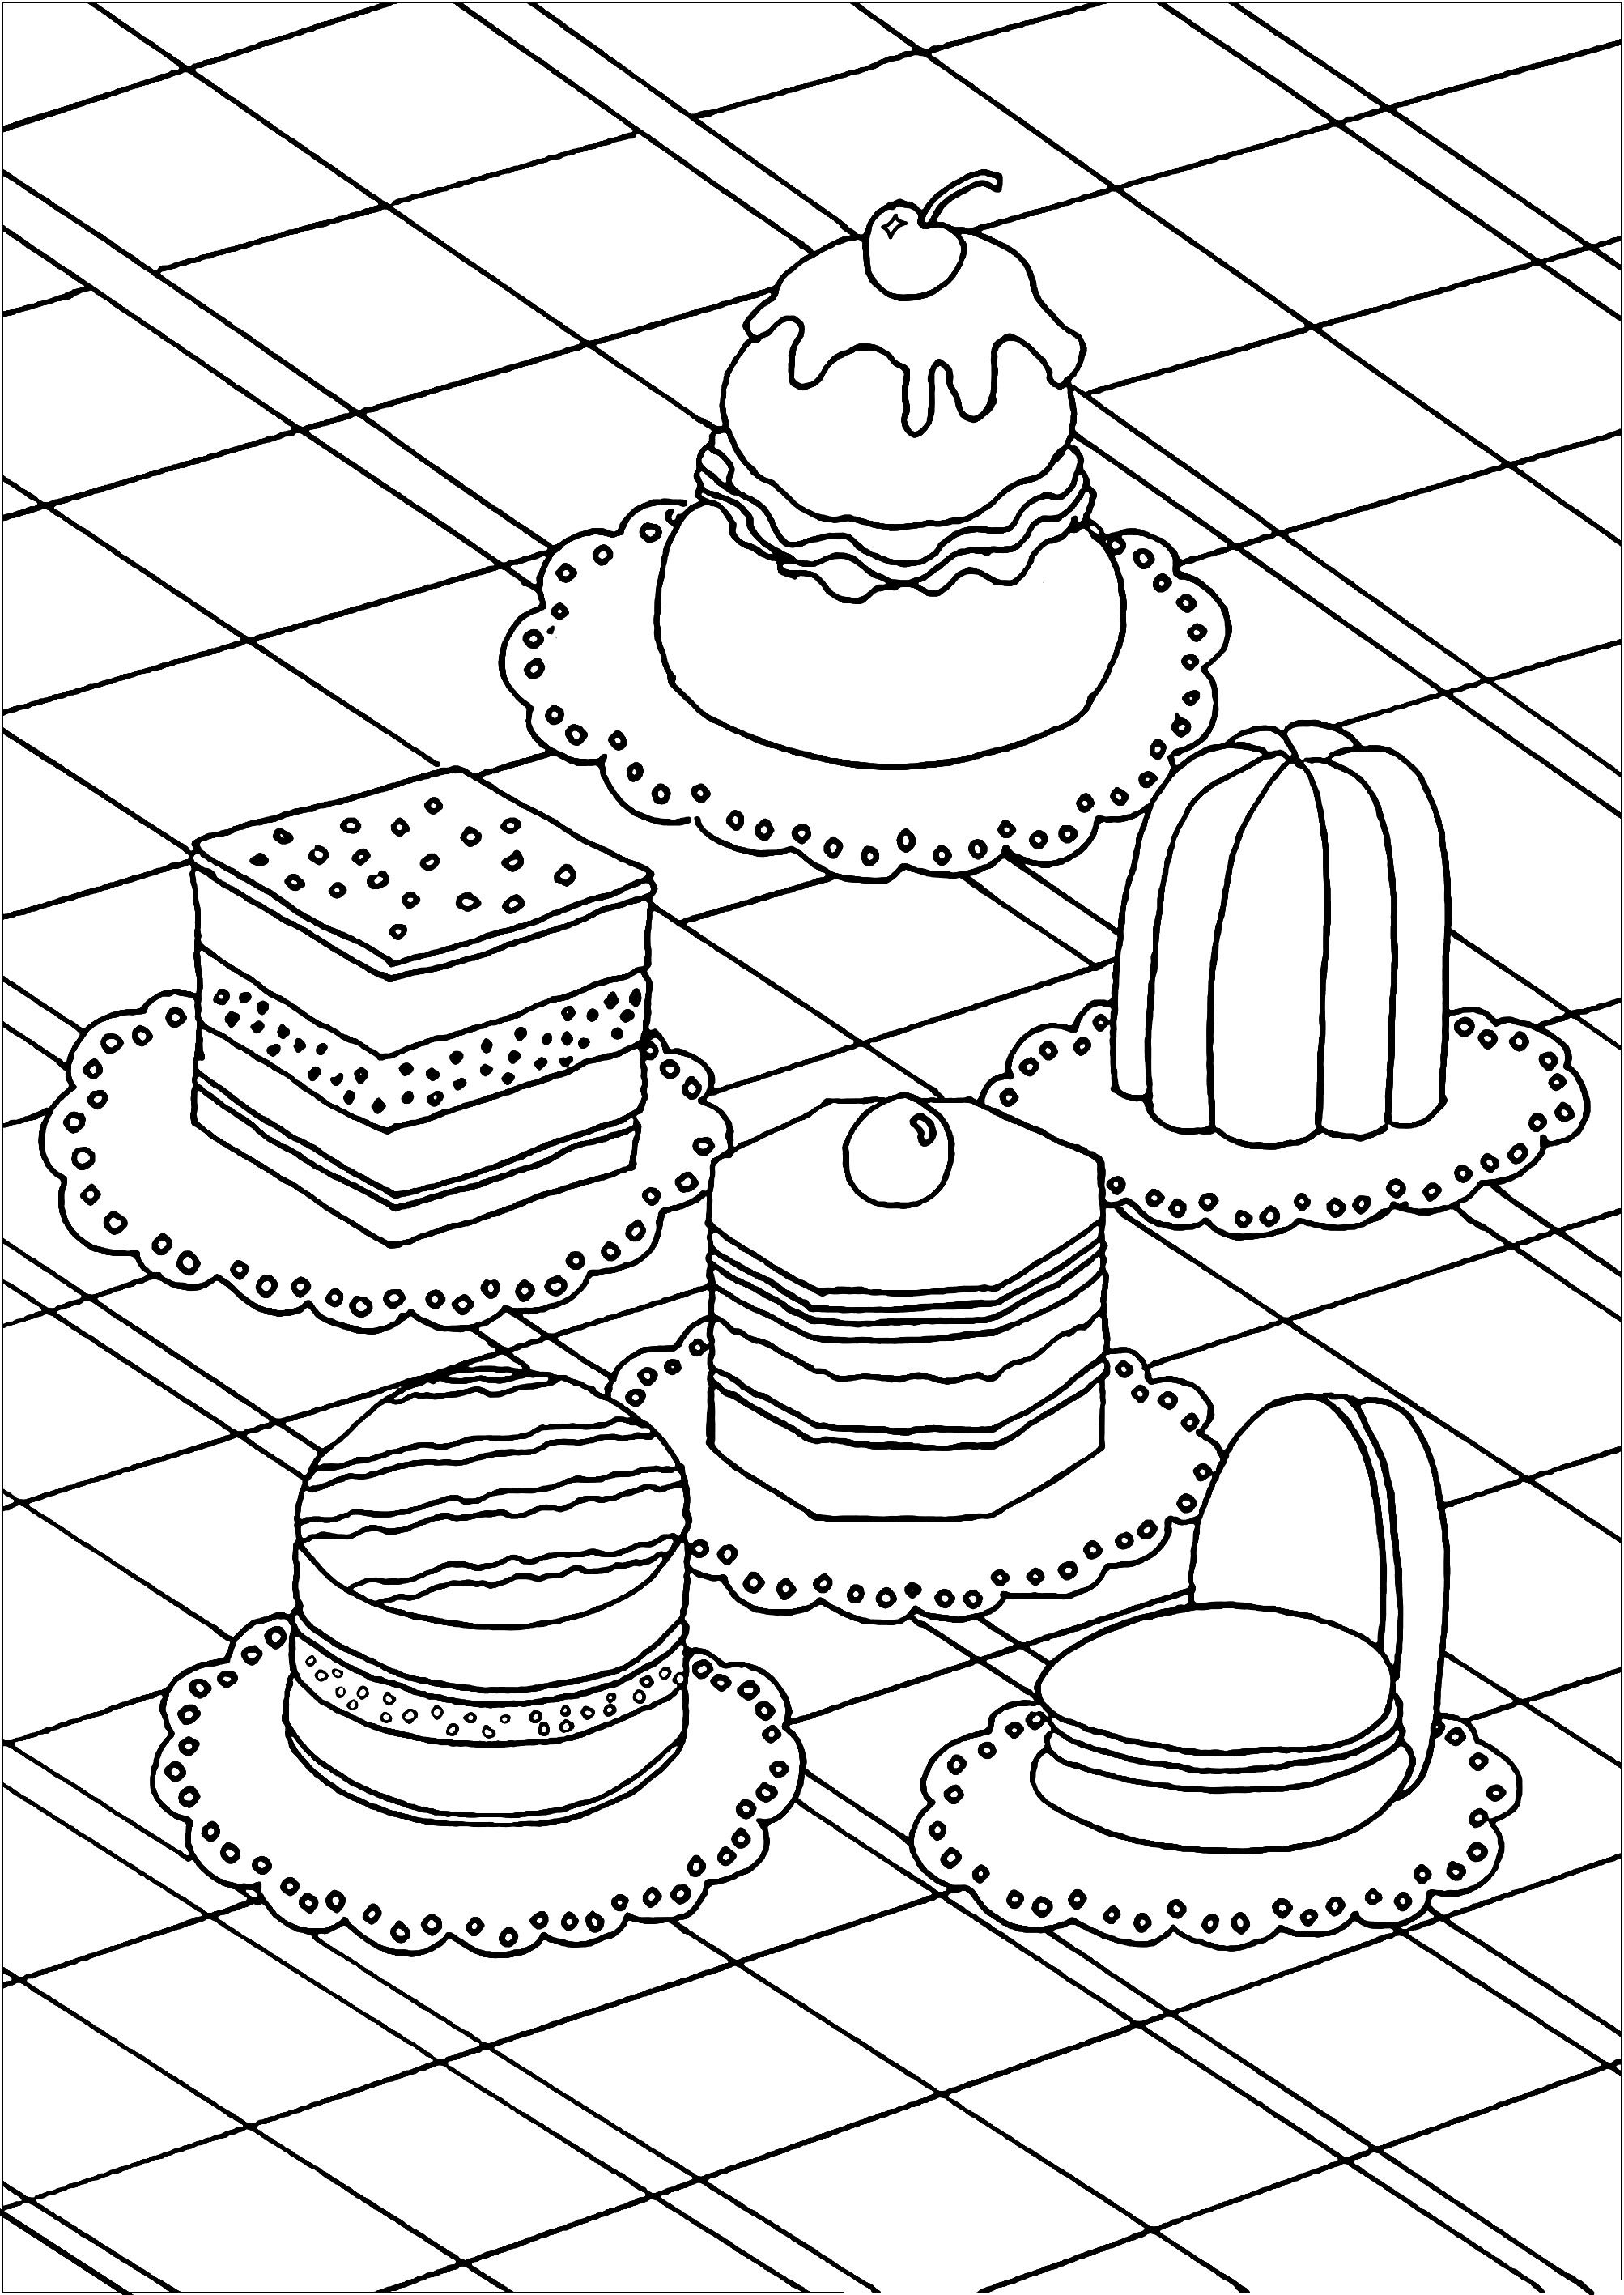 10 Leuke Kleurplaten van Taarten en Cupcakes om In te Kleuren